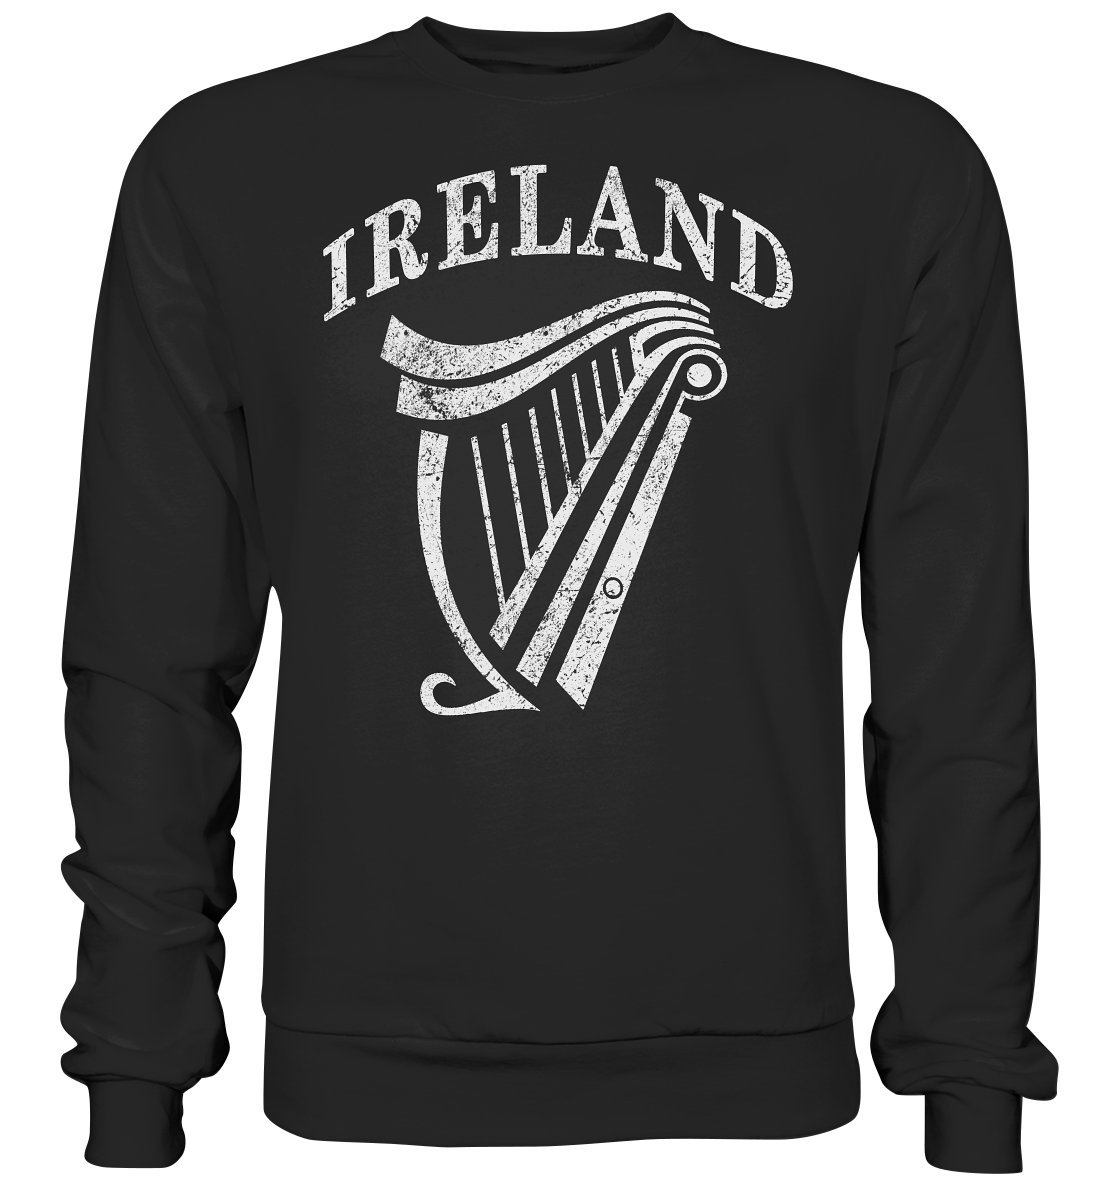 Ireland "Harp" - Premium Sweatshirt